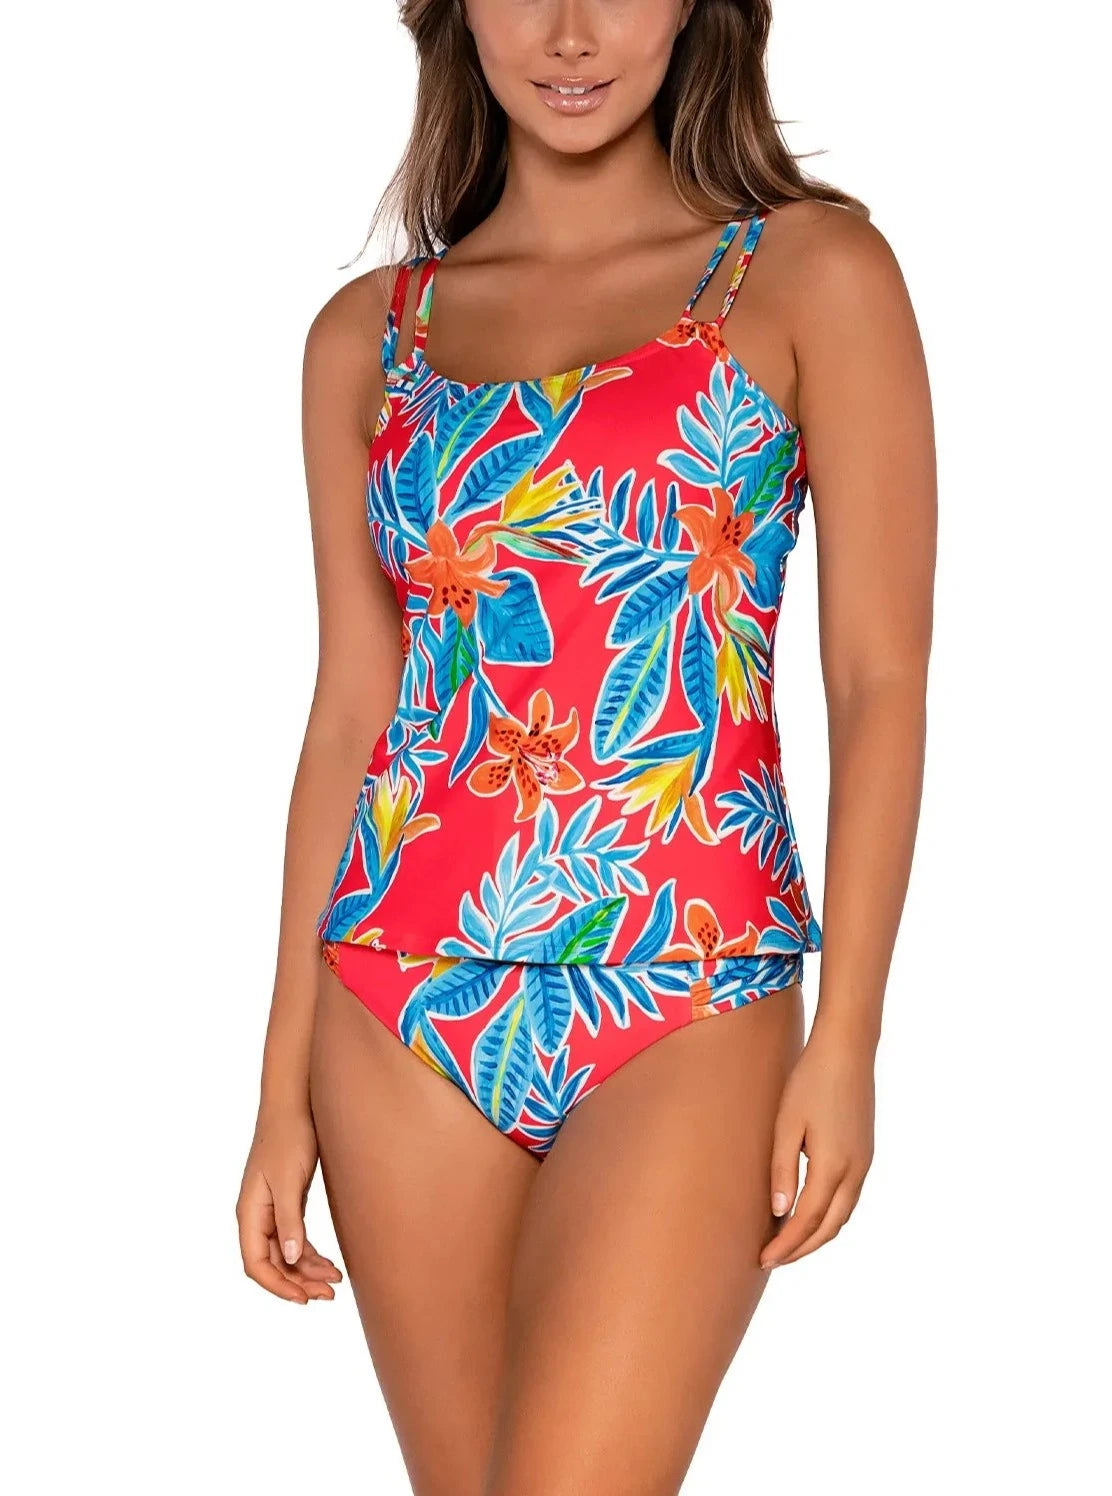 Sunsets Escape "Brands,Swimwear" 32D/34C / TIGLI / 75 Sunsets Tiger Lily Taylor Tankini